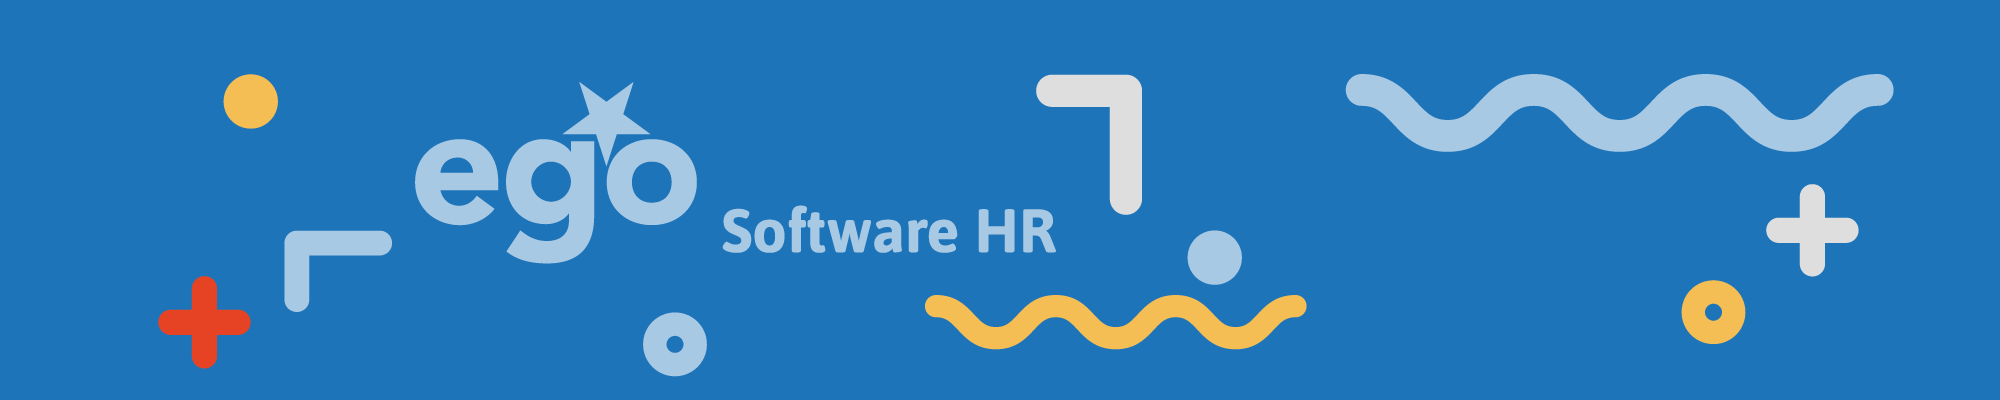 Recensioni Ego Software HR: Software per la gestione delle risorse umane - Appvizer